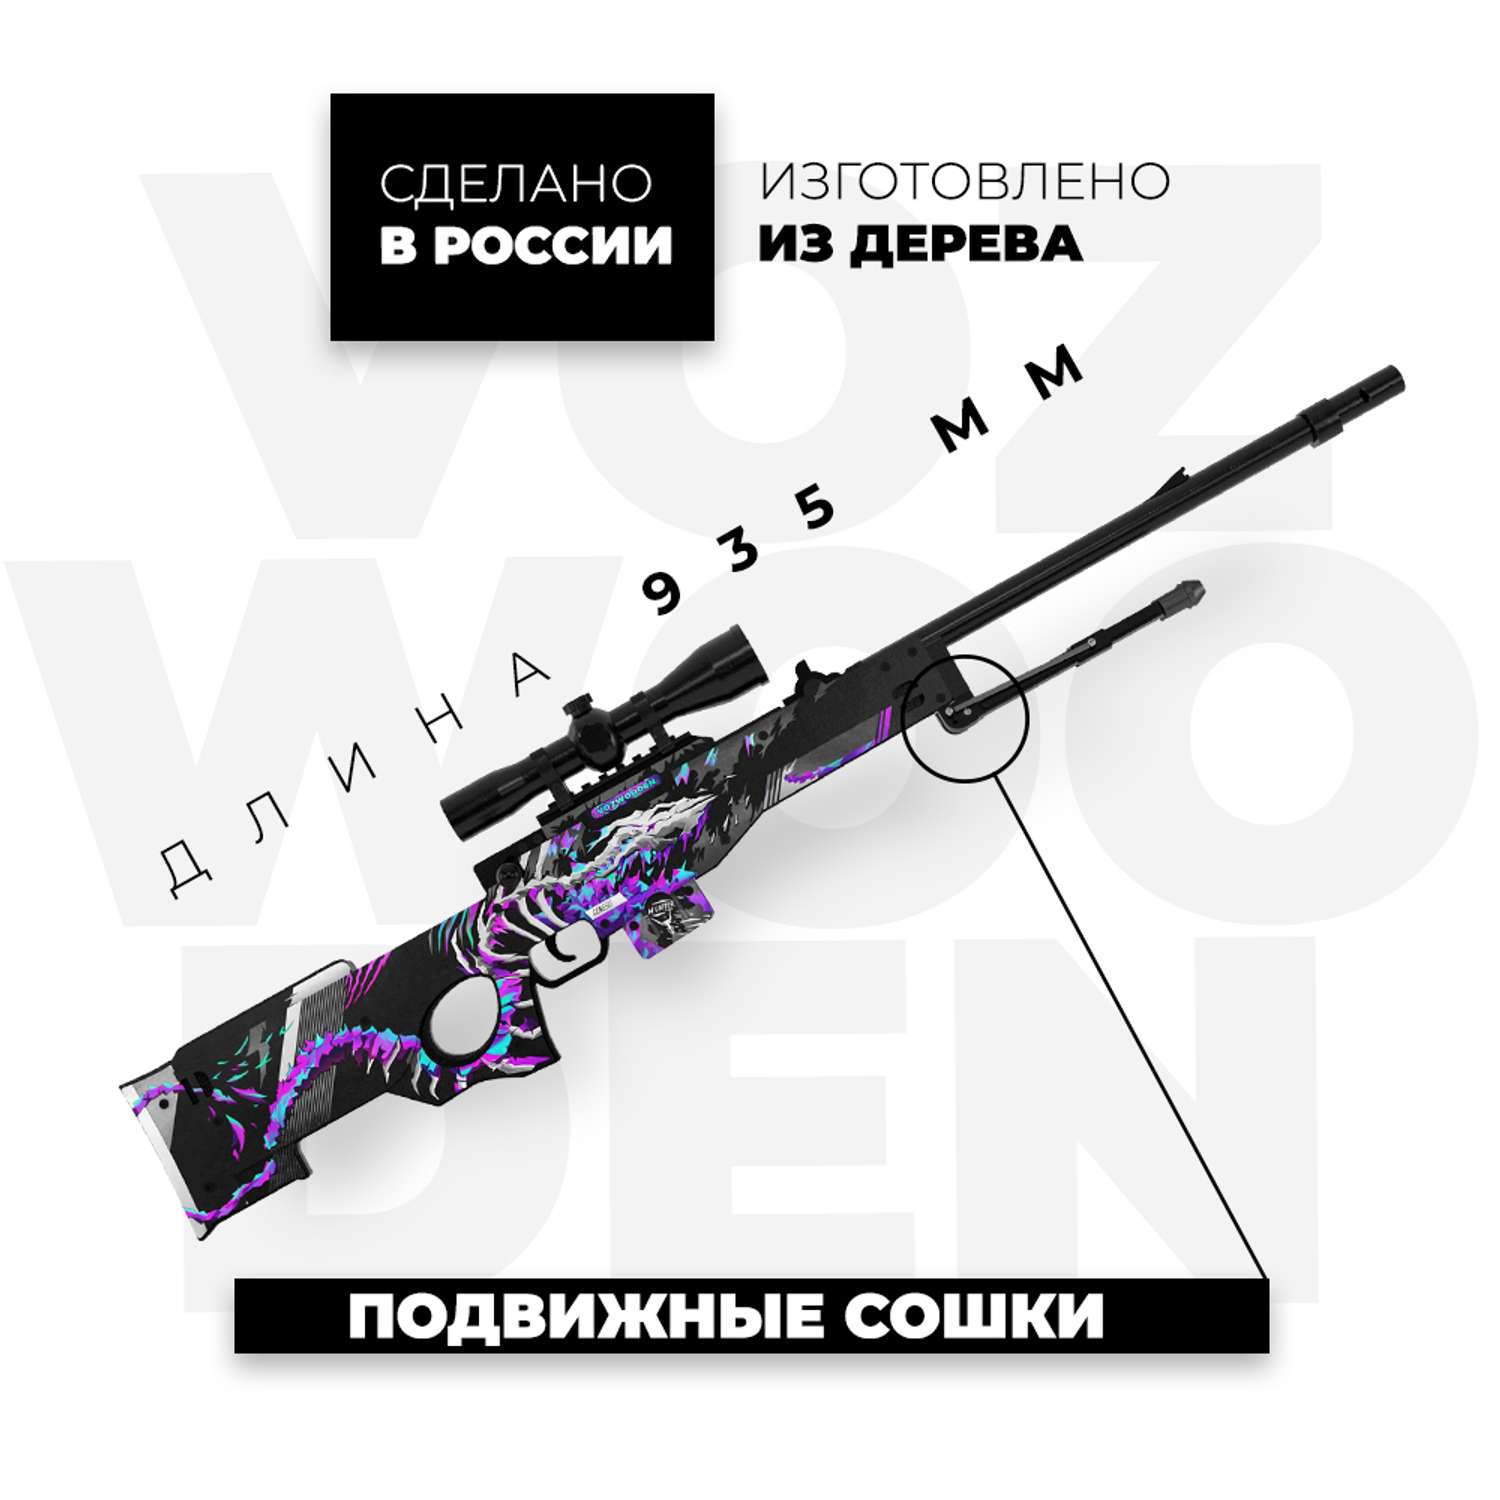 Снайперская винтовка VozWooden AWM Генезис Стандофф 2 деревянный резинкострел - фото 3